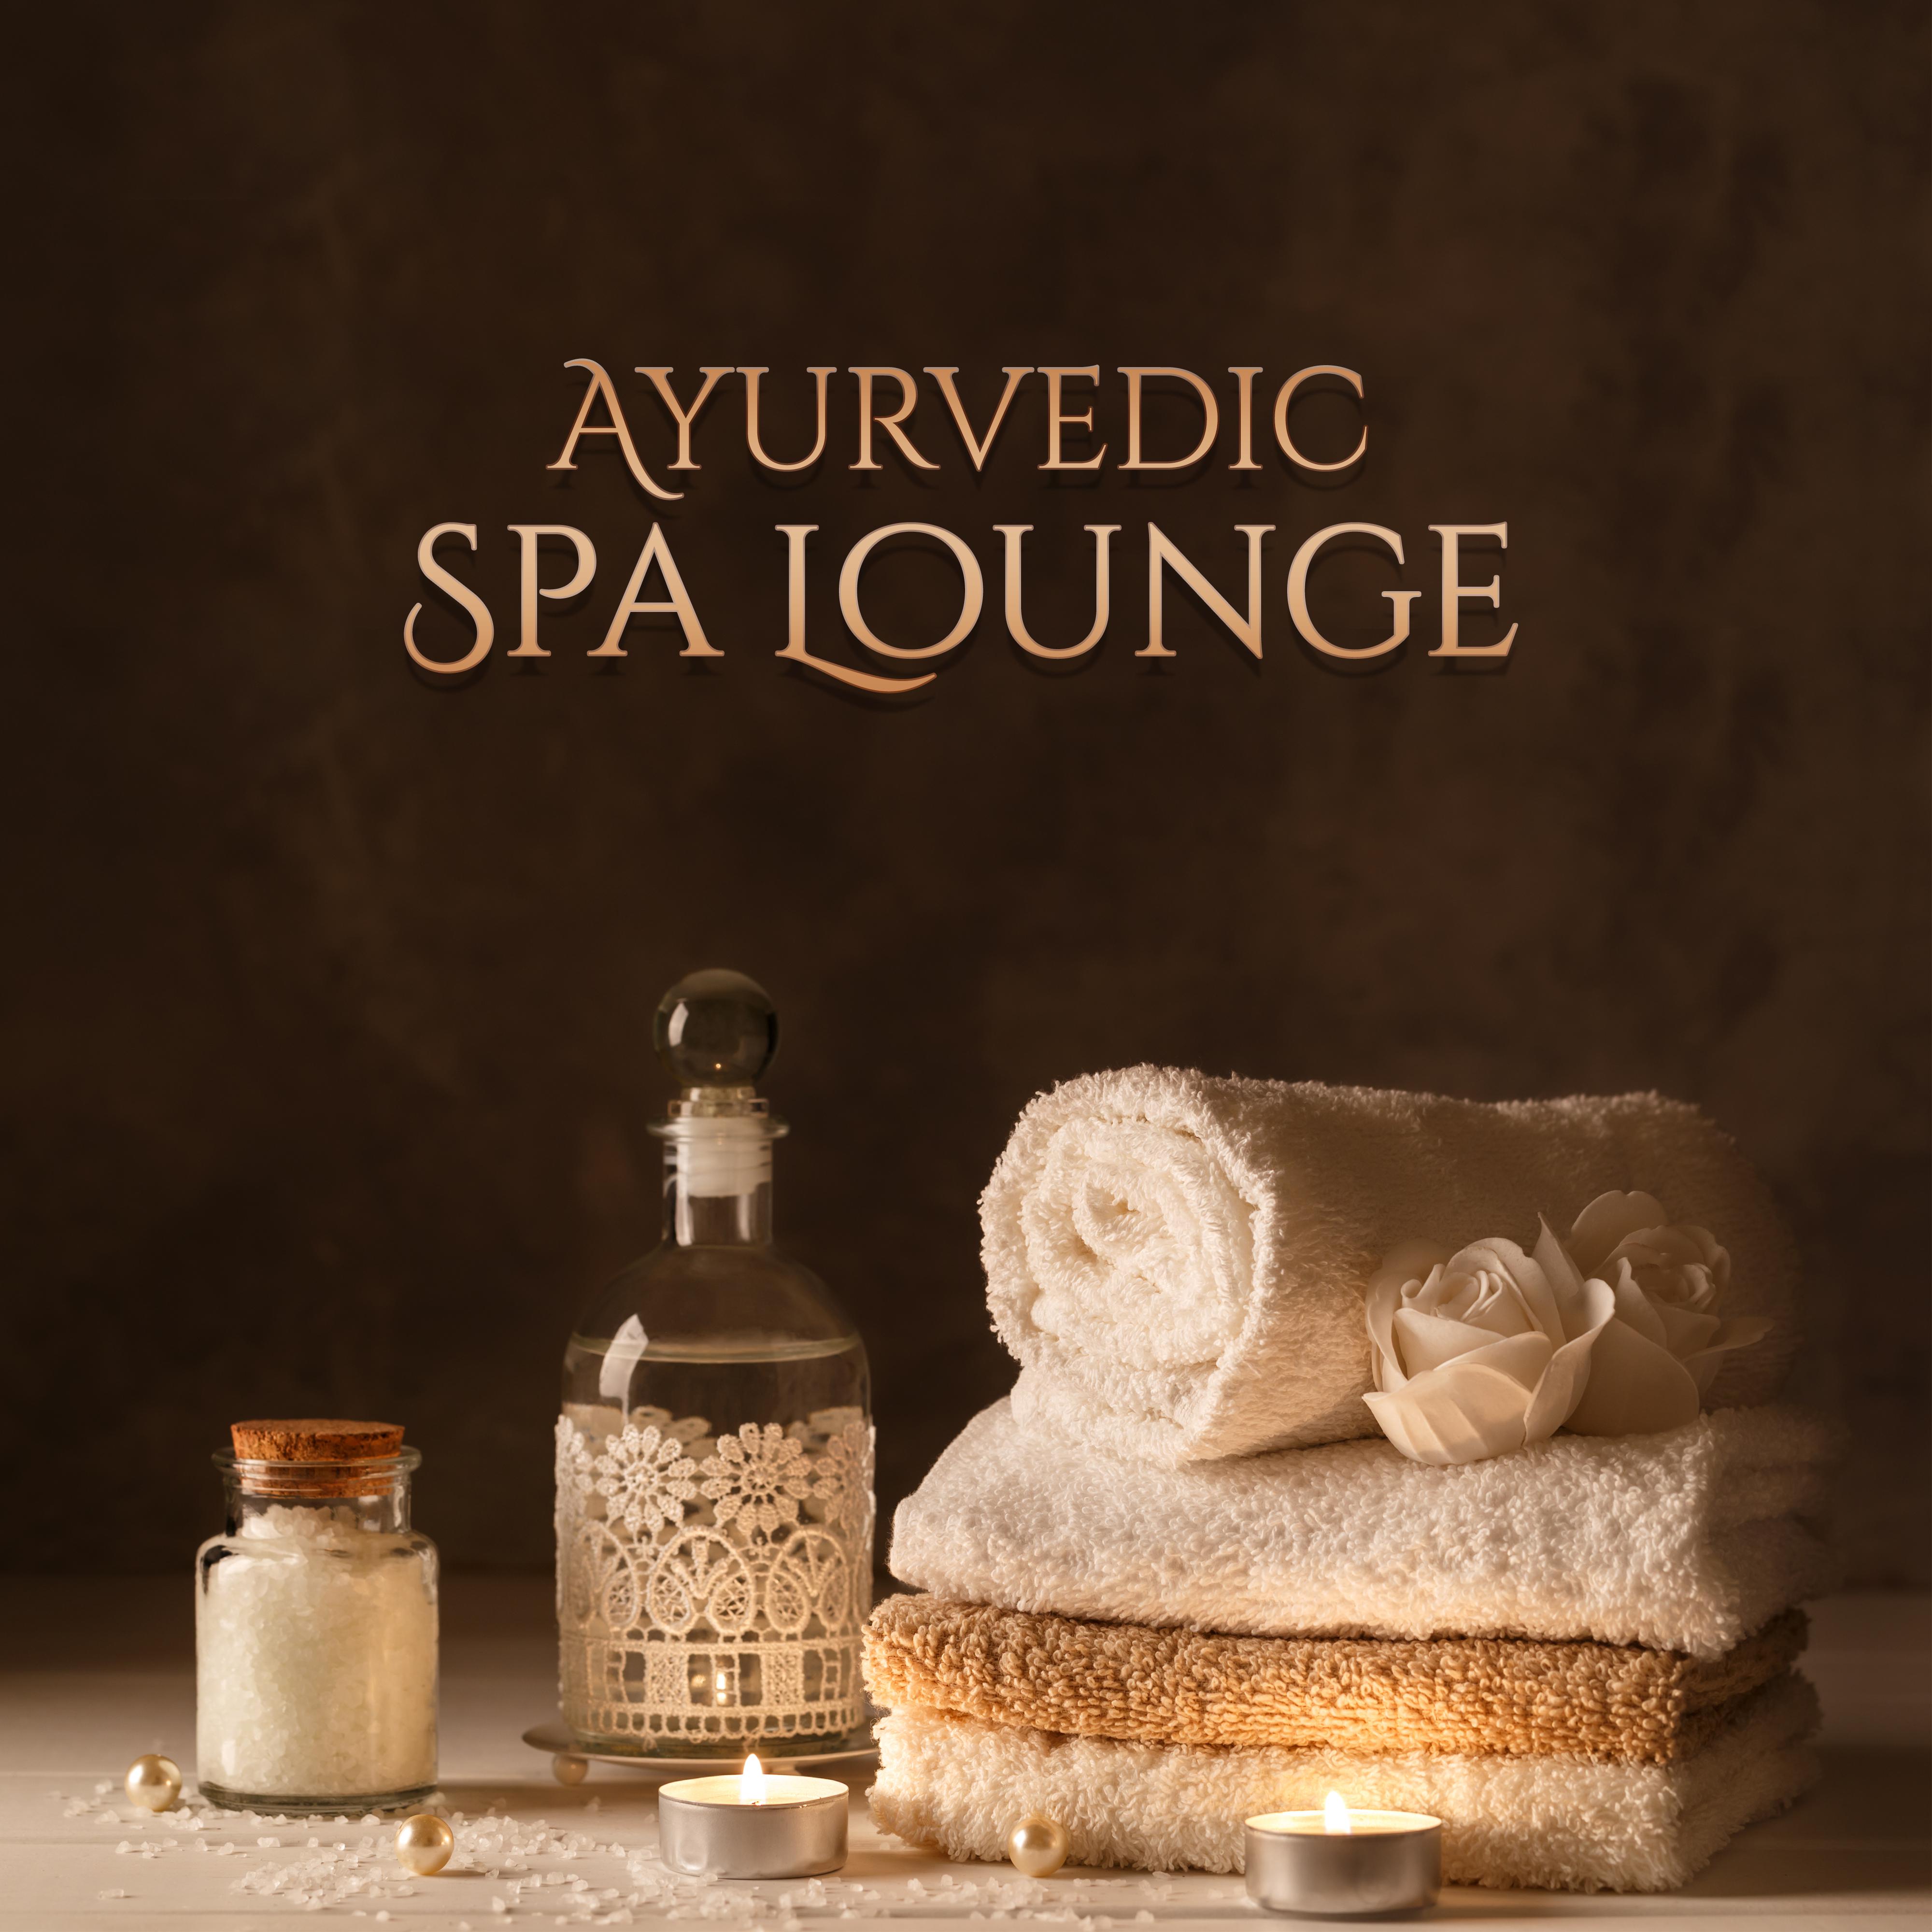 Ayurvedic Spa Lounge